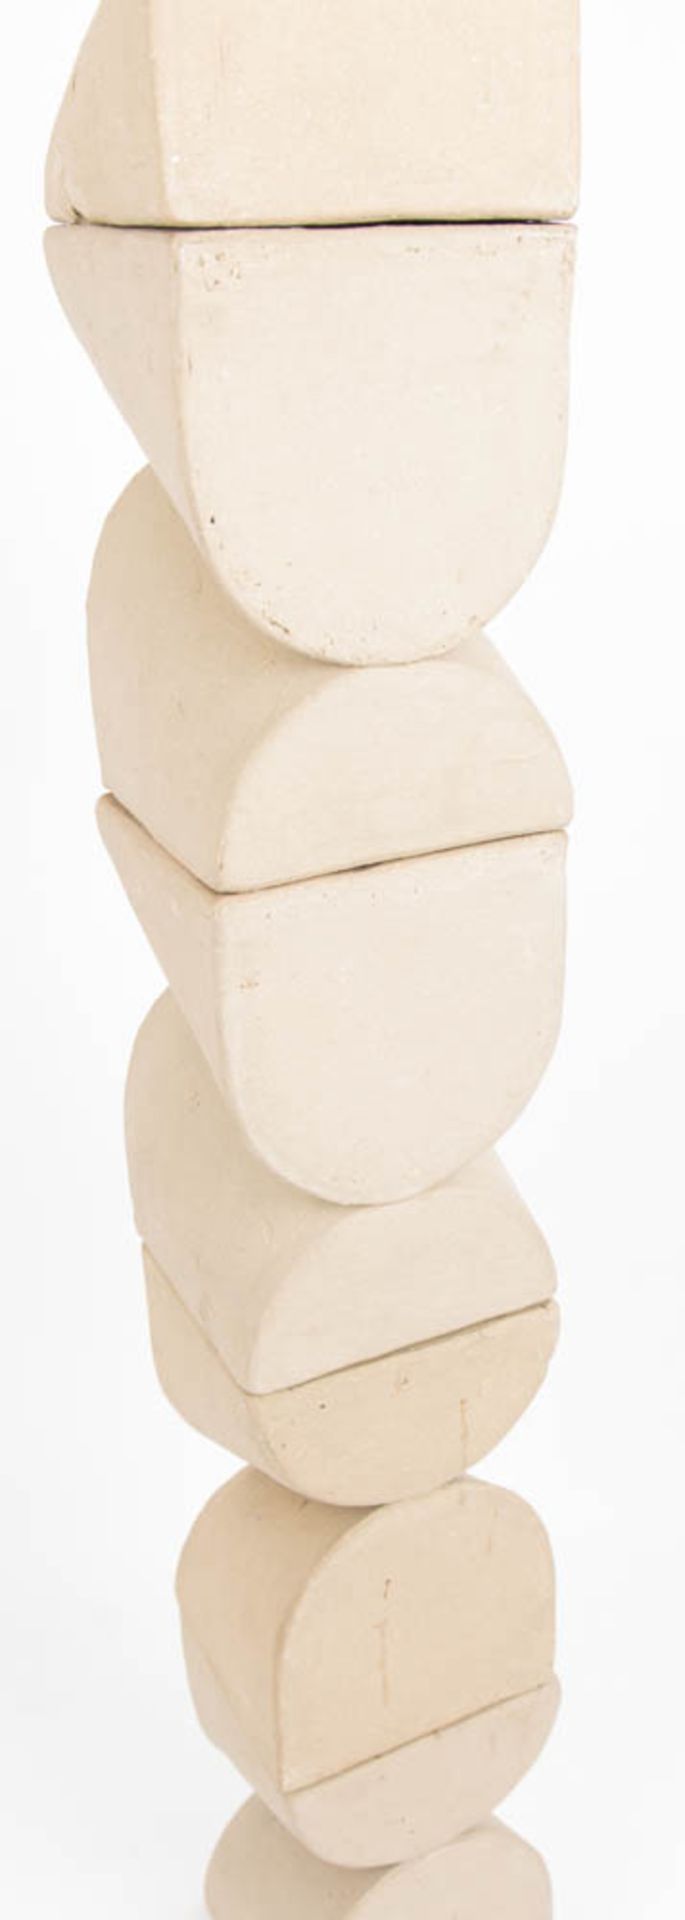 Elisabeth Köhncke, Skulptur aus fünf formgleichen, kubischen Formen, Ton, 20. Jh. - Bild 3 aus 3